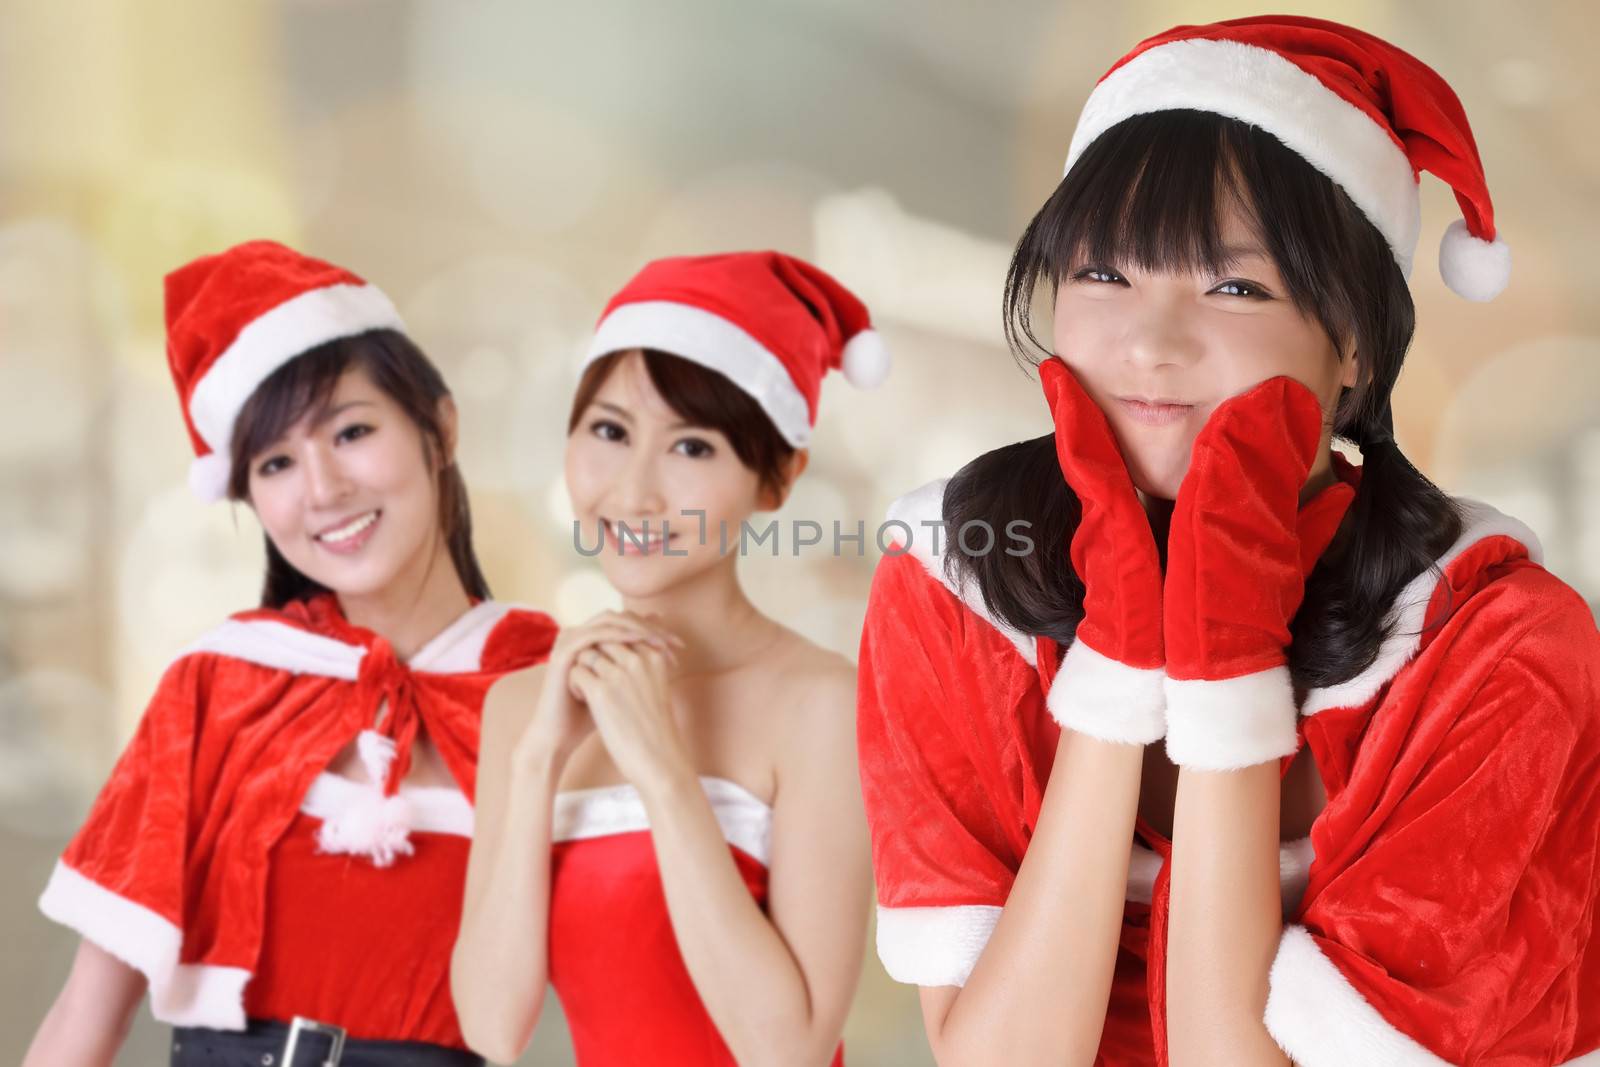 Attractive Christmas girls by elwynn